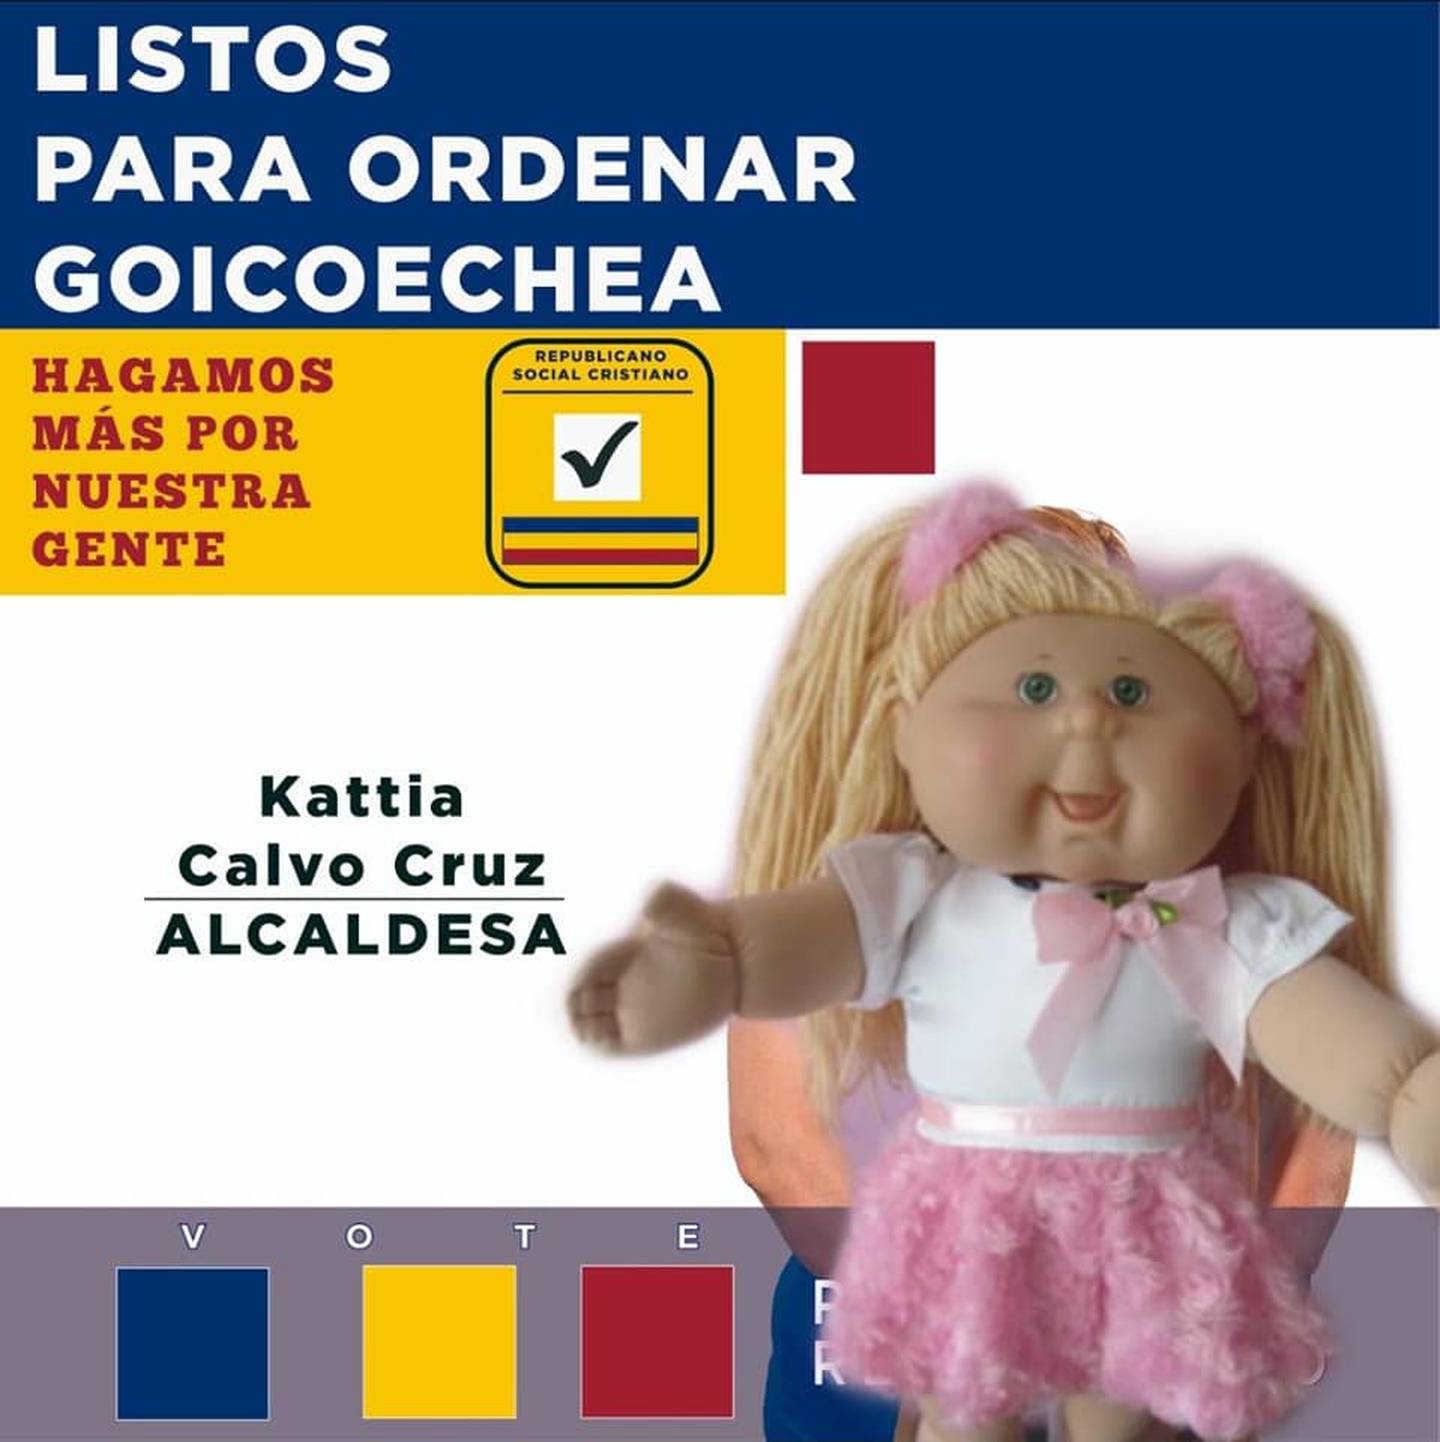 Kattia Calvo Cruz igualita a Paquita la del barrio, es candidata a alcaldesa